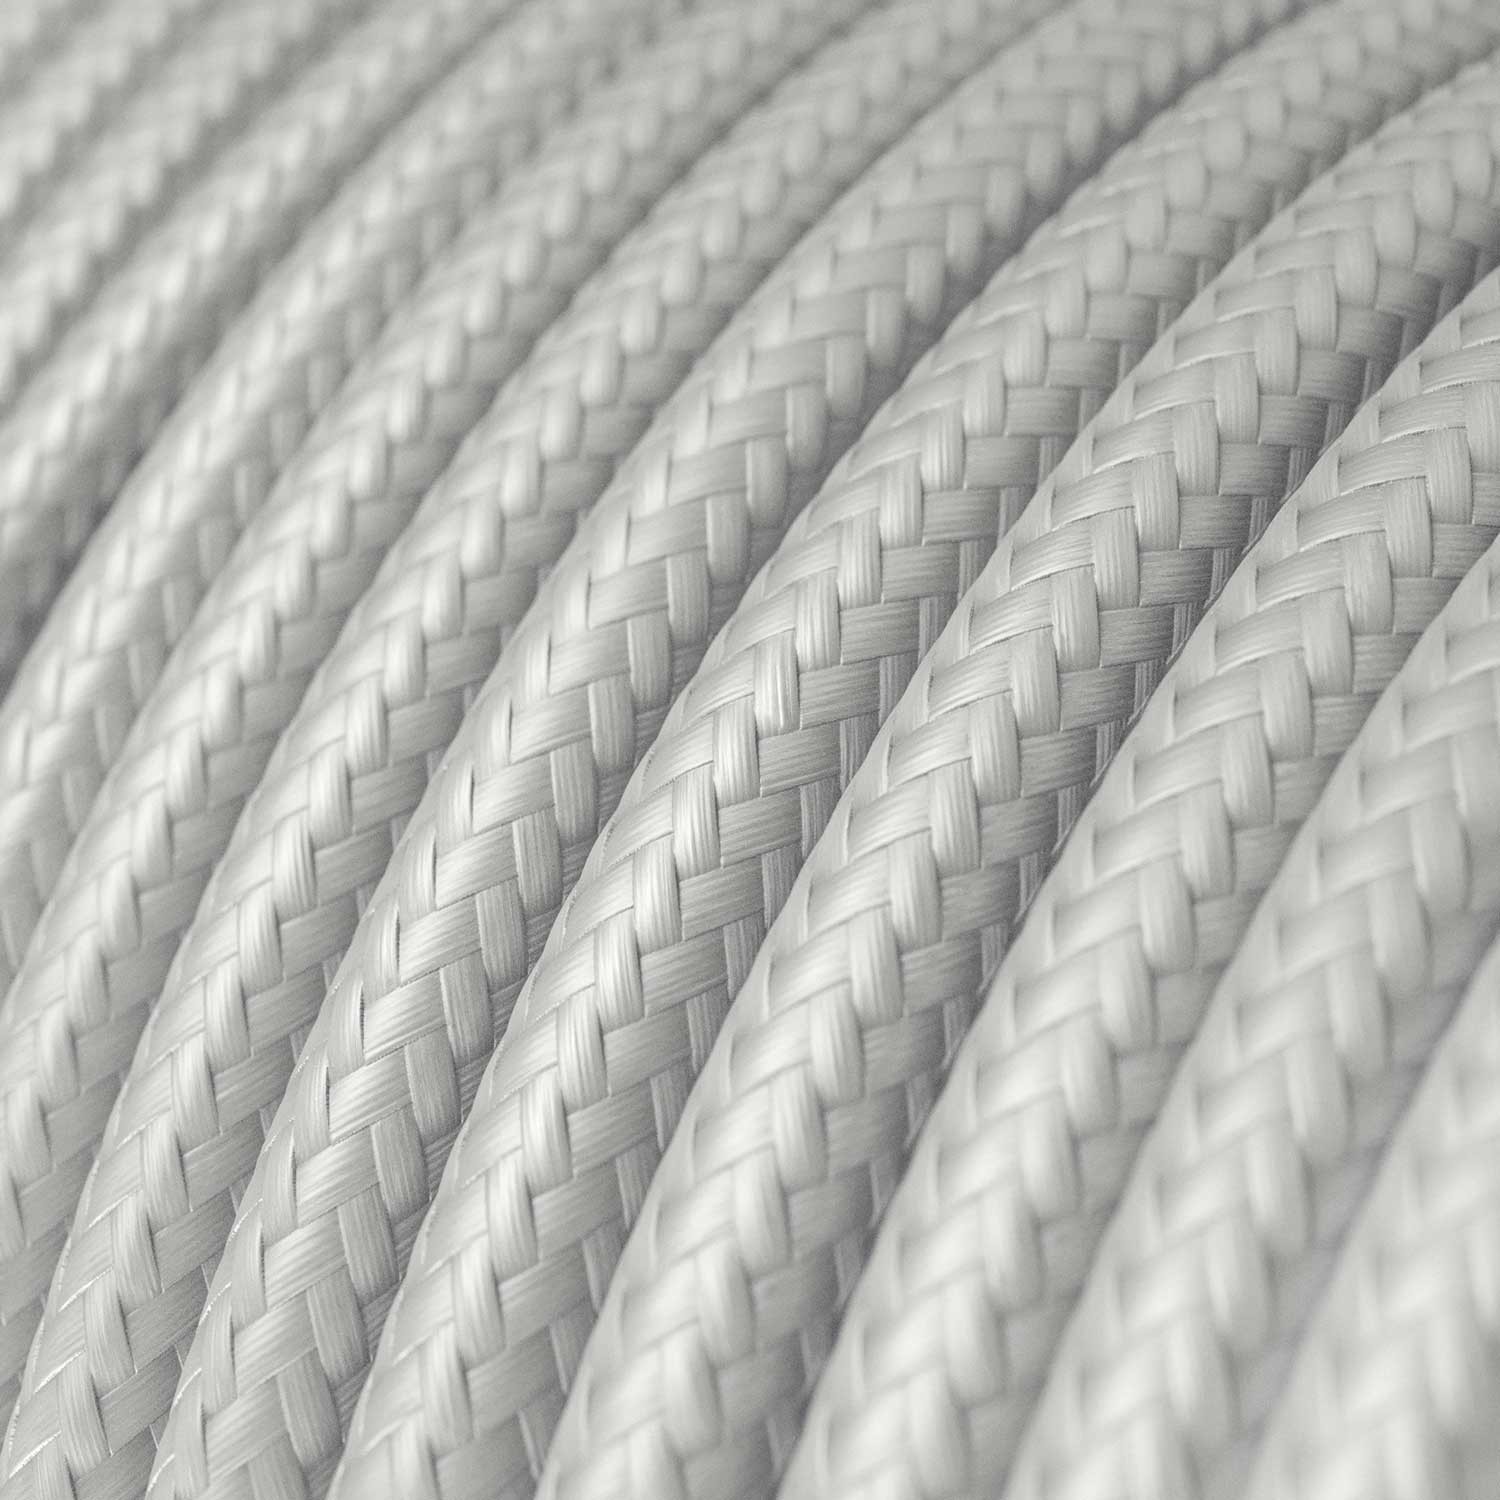 Okrogel tekstilen električen kabel RM02 - srebrn